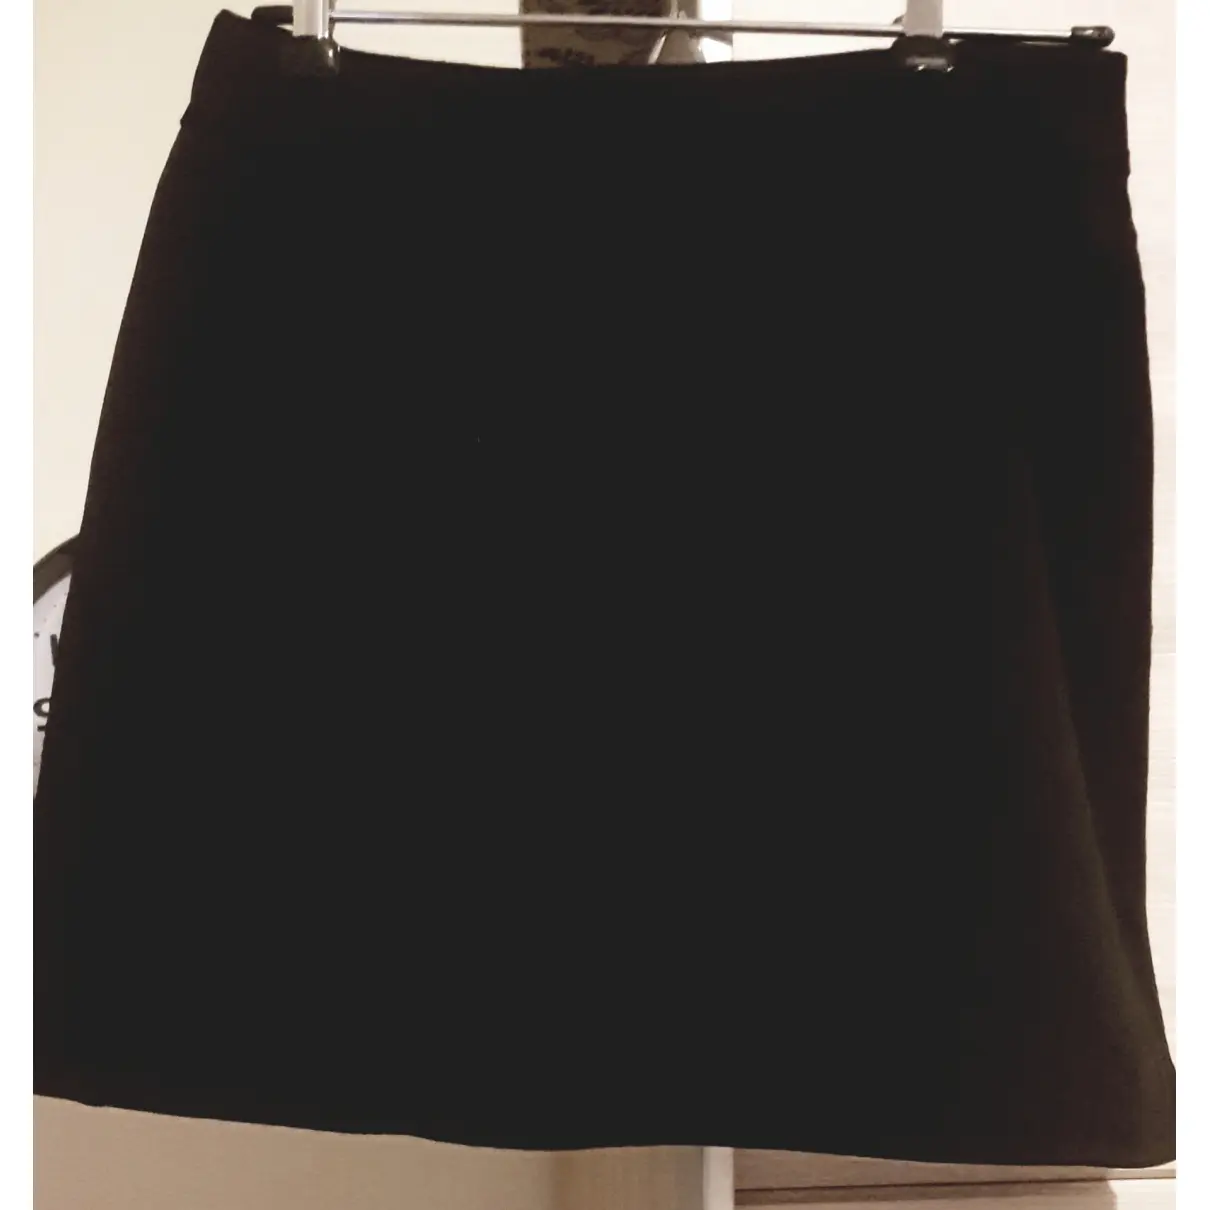 Buy Claude Montana Wool mini skirt online - Vintage